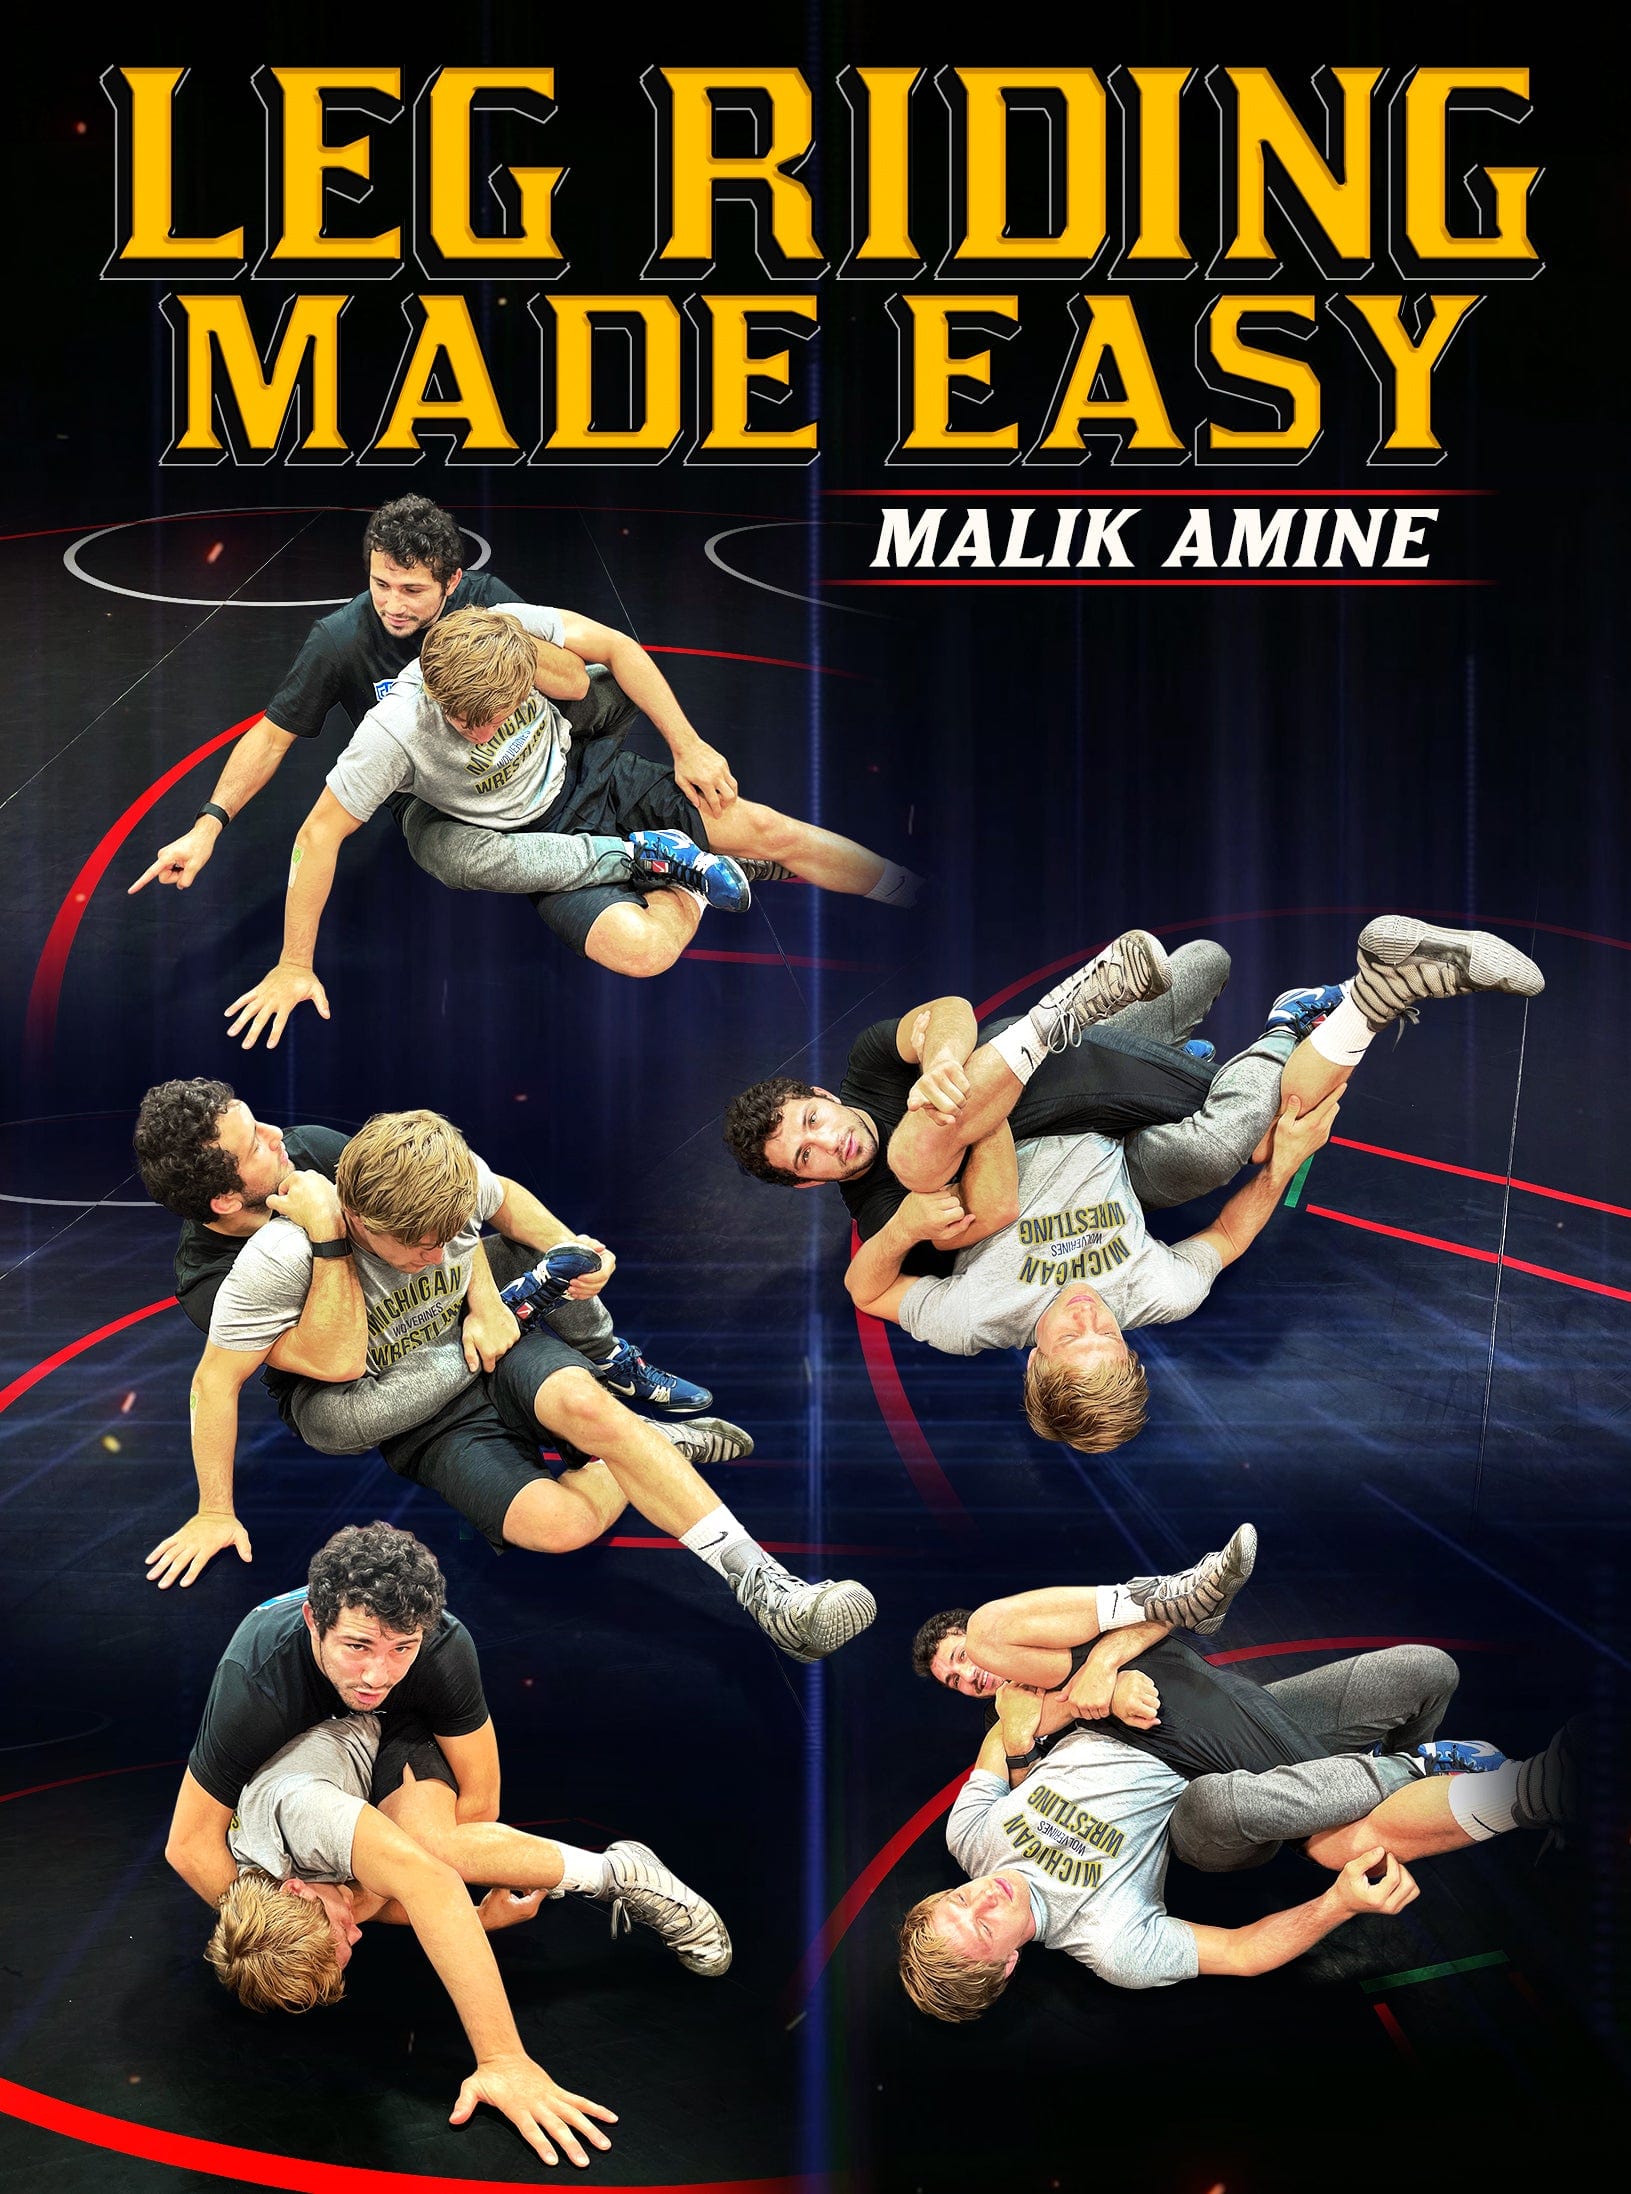 Leg Riding Made Easy by Malik Amine - Fanatic Wrestling